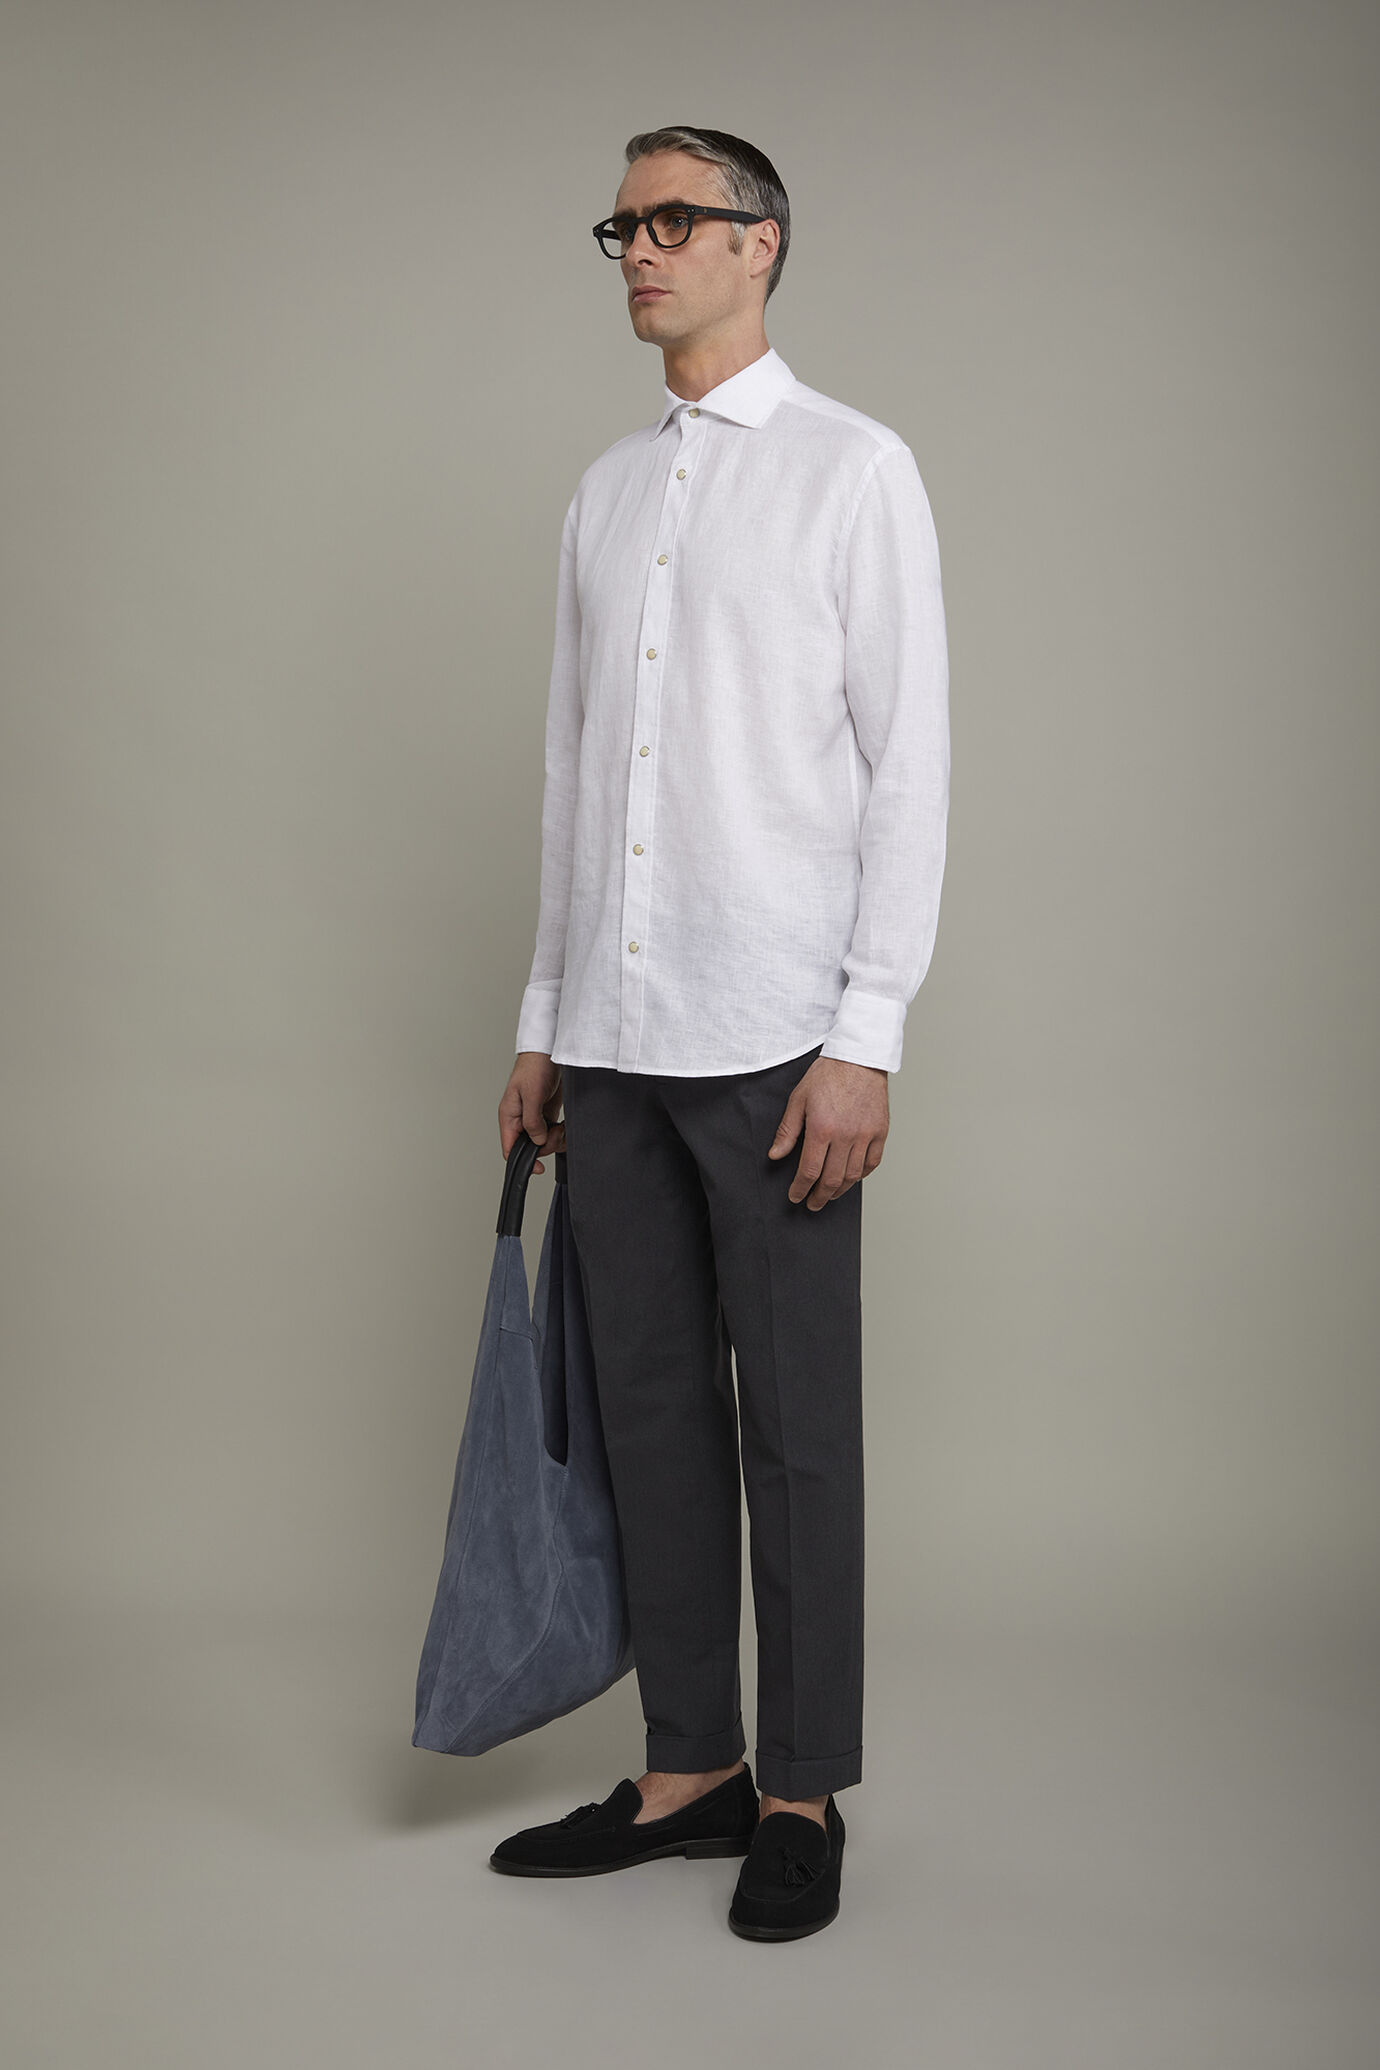 Camicia casual uomo collo classico 100% lino comfort fit image number 1